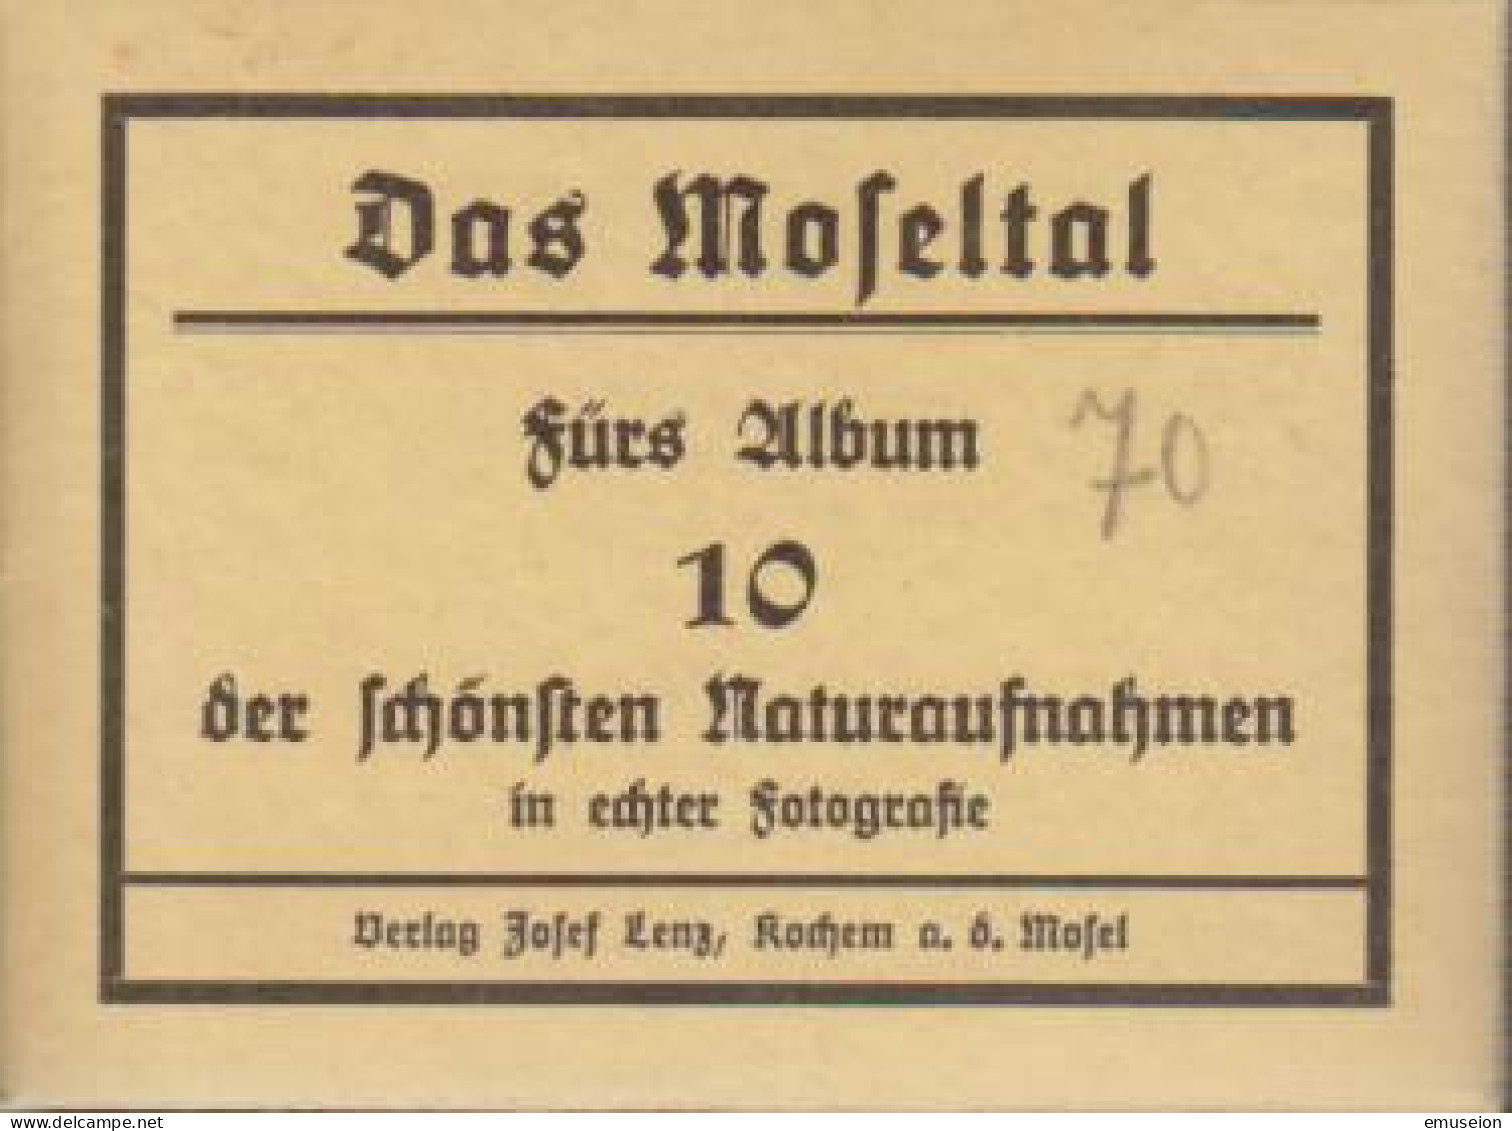 Das Moseltal : Fürs Album - 10 Der Schönsten Naturaufnahmen In Echter Fotografie. - Livres Anciens